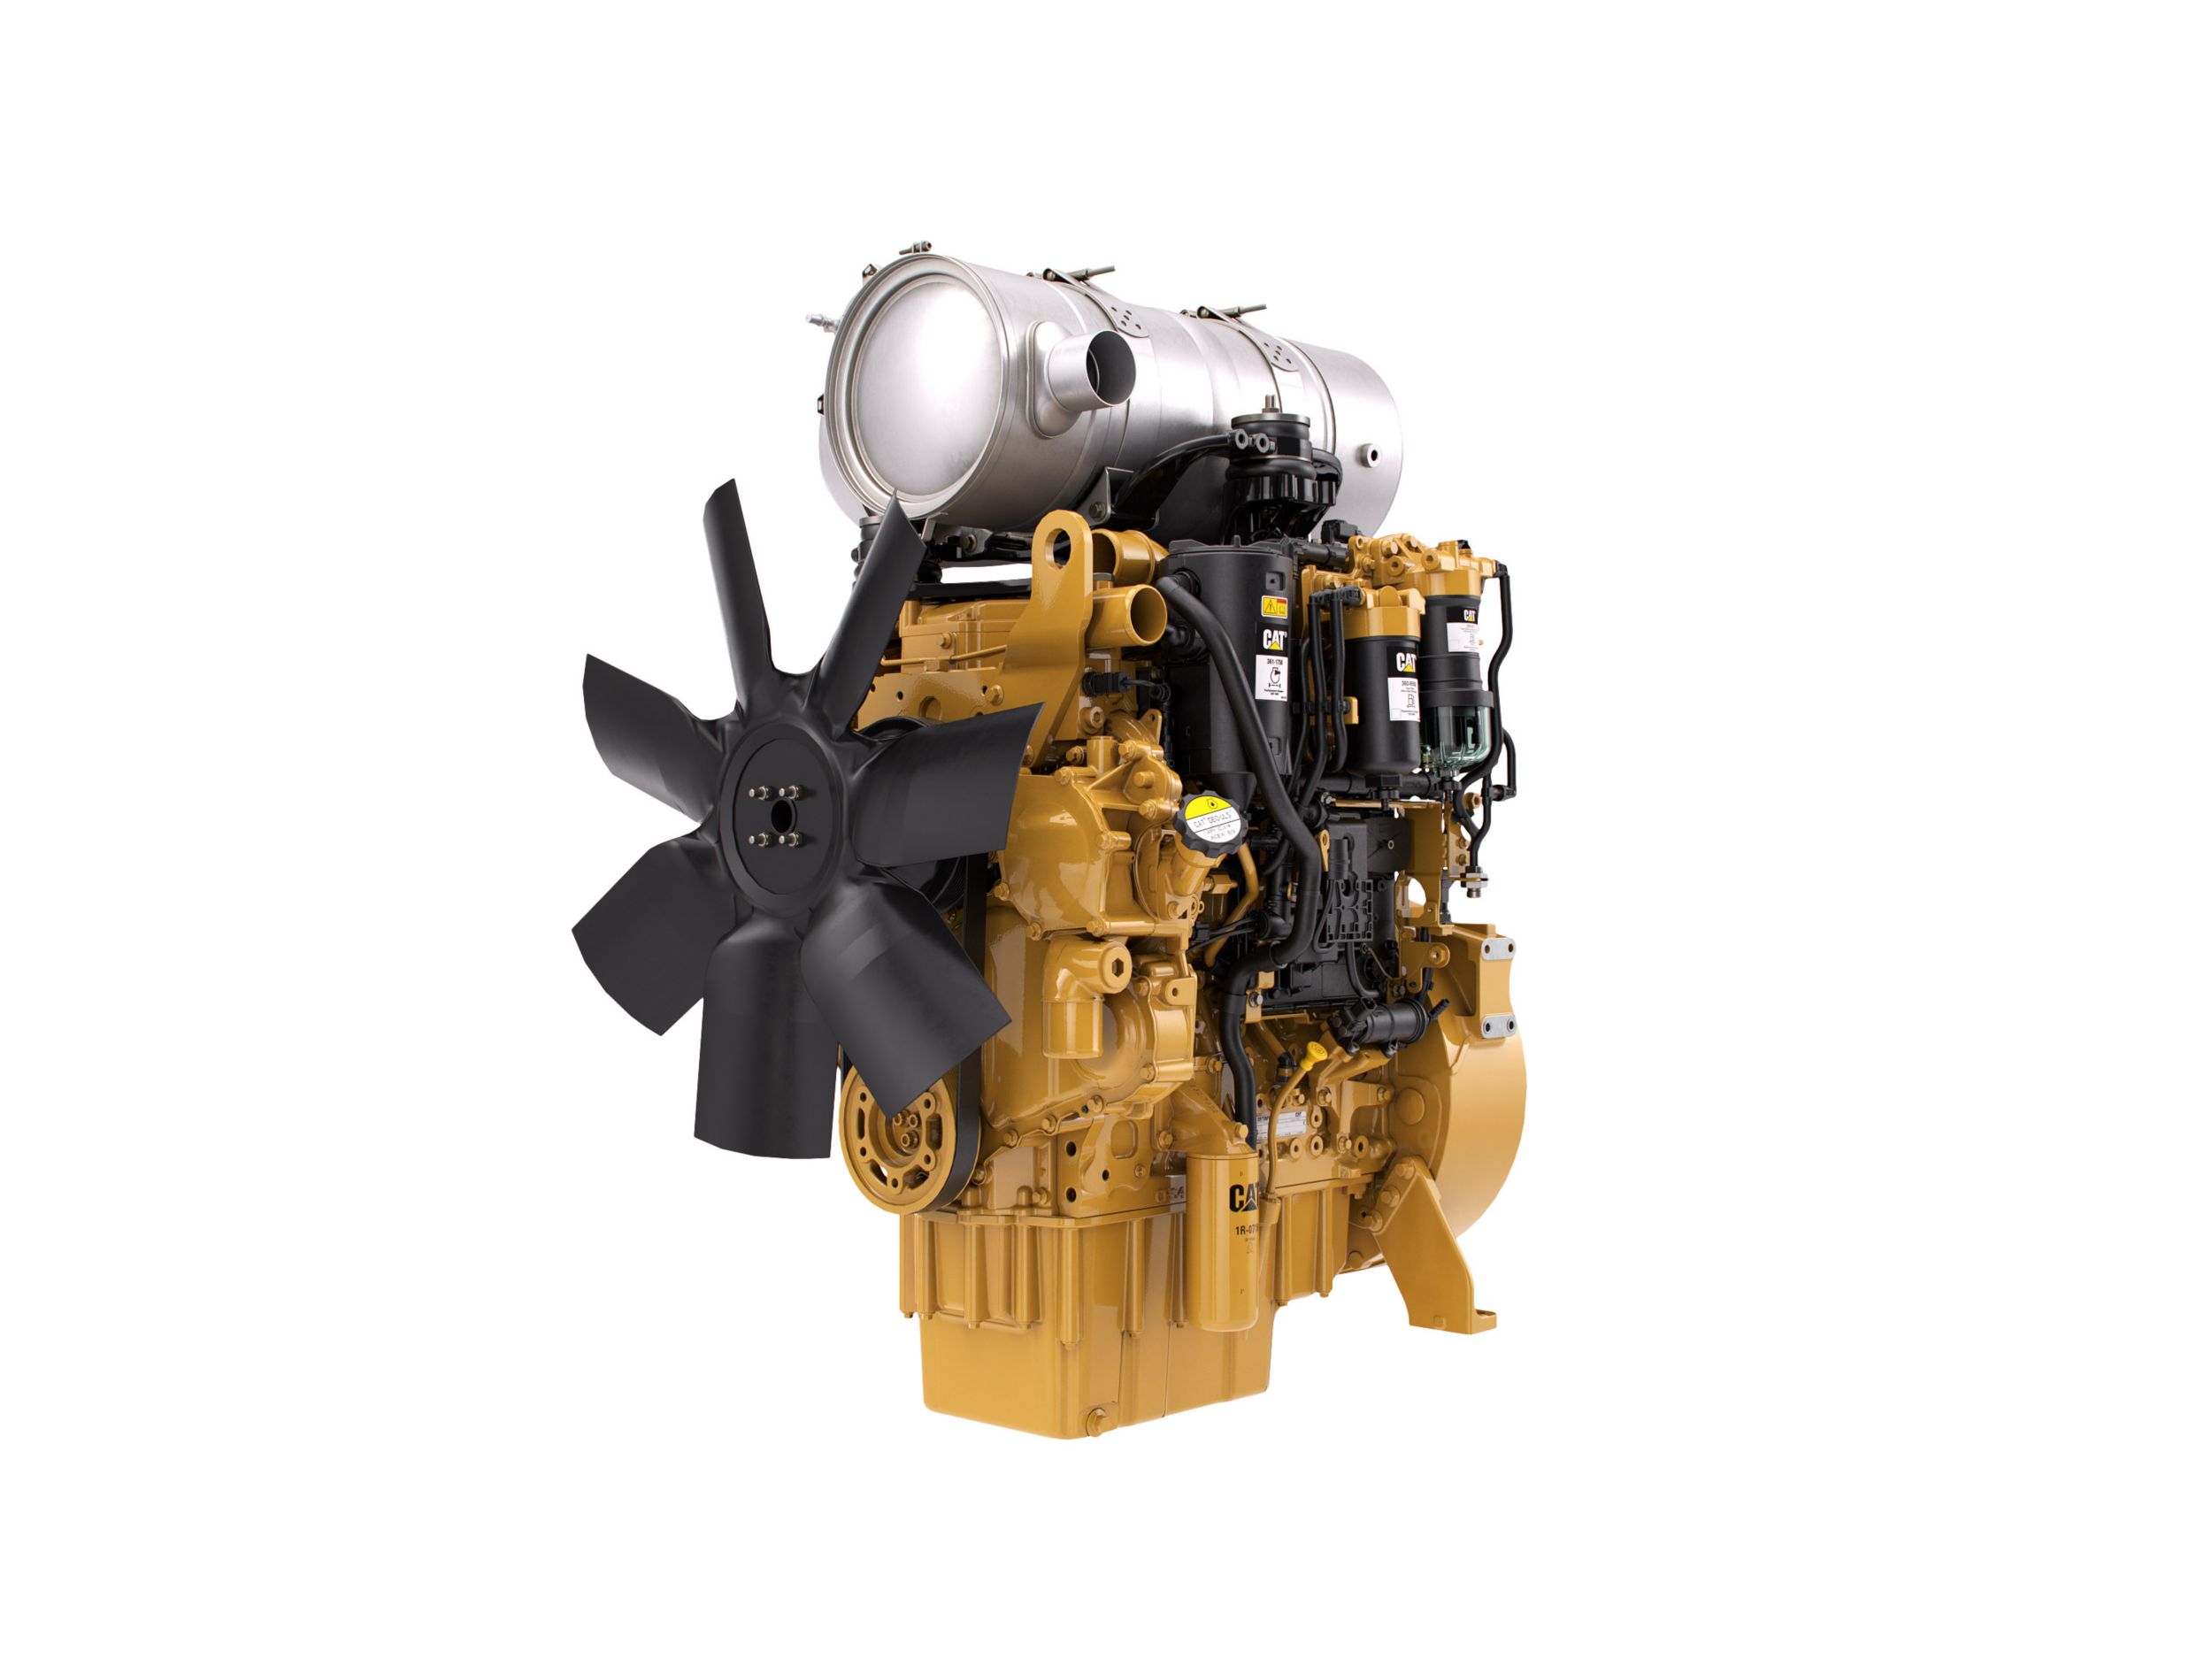 Motori diesel C4.4 Tier 4 - Aree altamente regolamentate